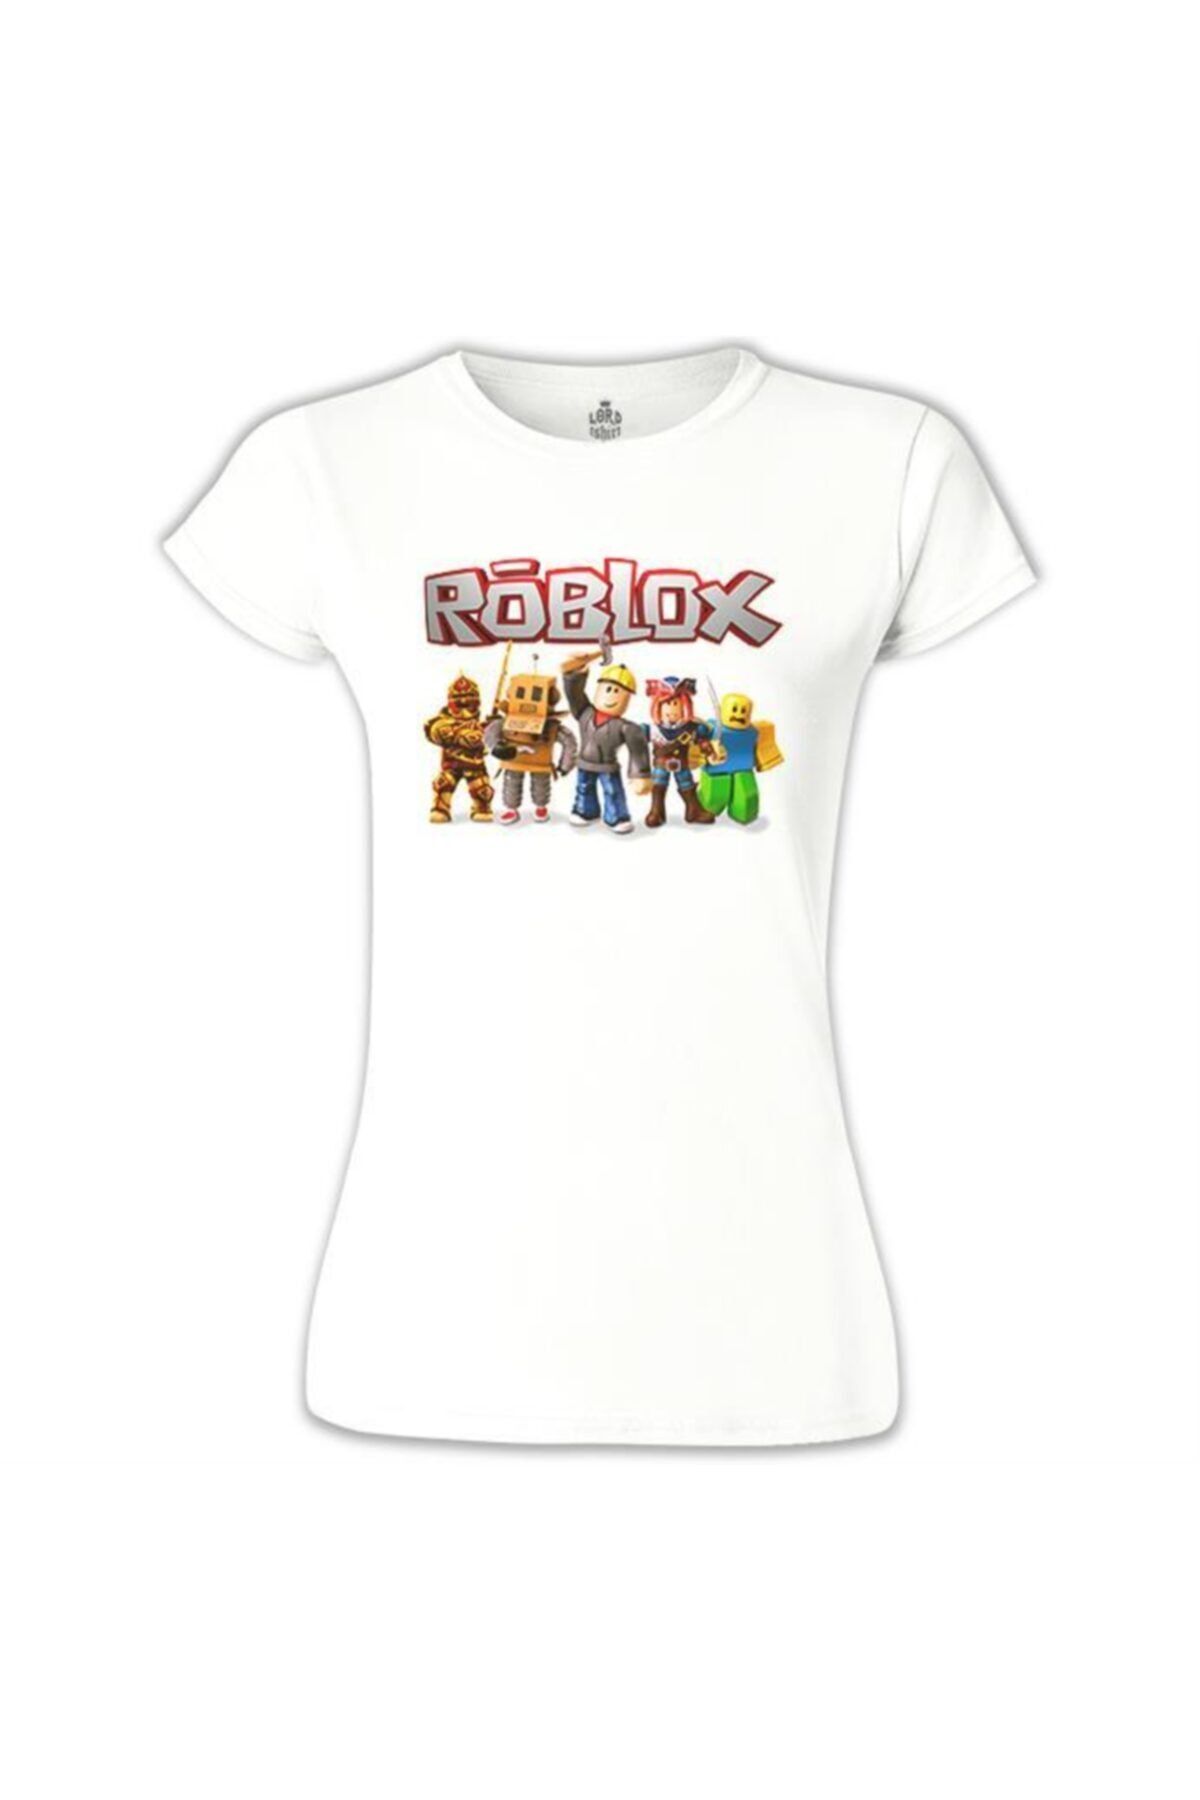 Lord T-Shirt Roblox - Macera Beyaz Bayan Tshirt